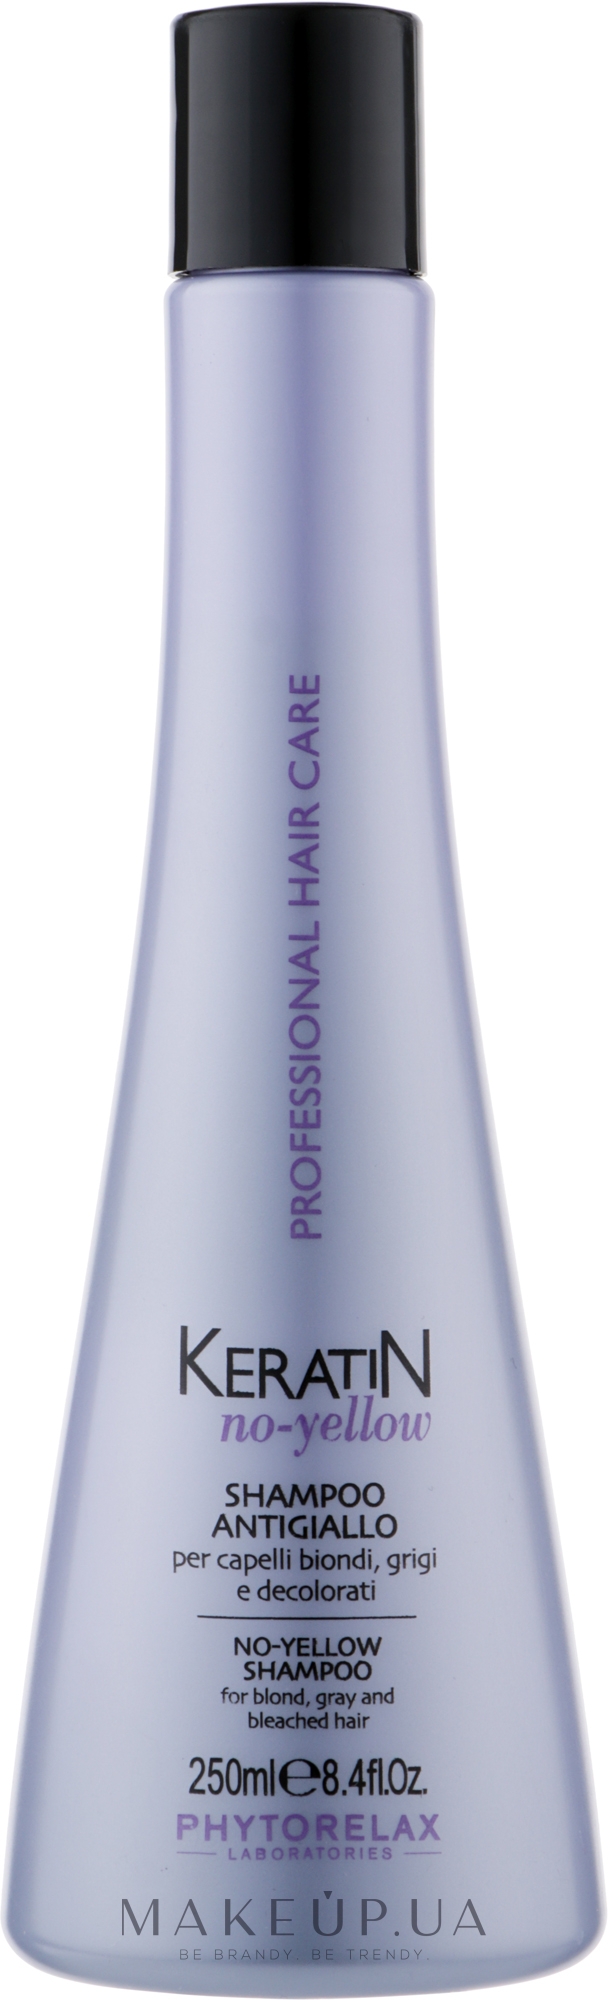 Антижовтий шампунь для світлого волосся - Phytorelax Laboratories Keratin No-Yellow Shampoo — фото 250ml